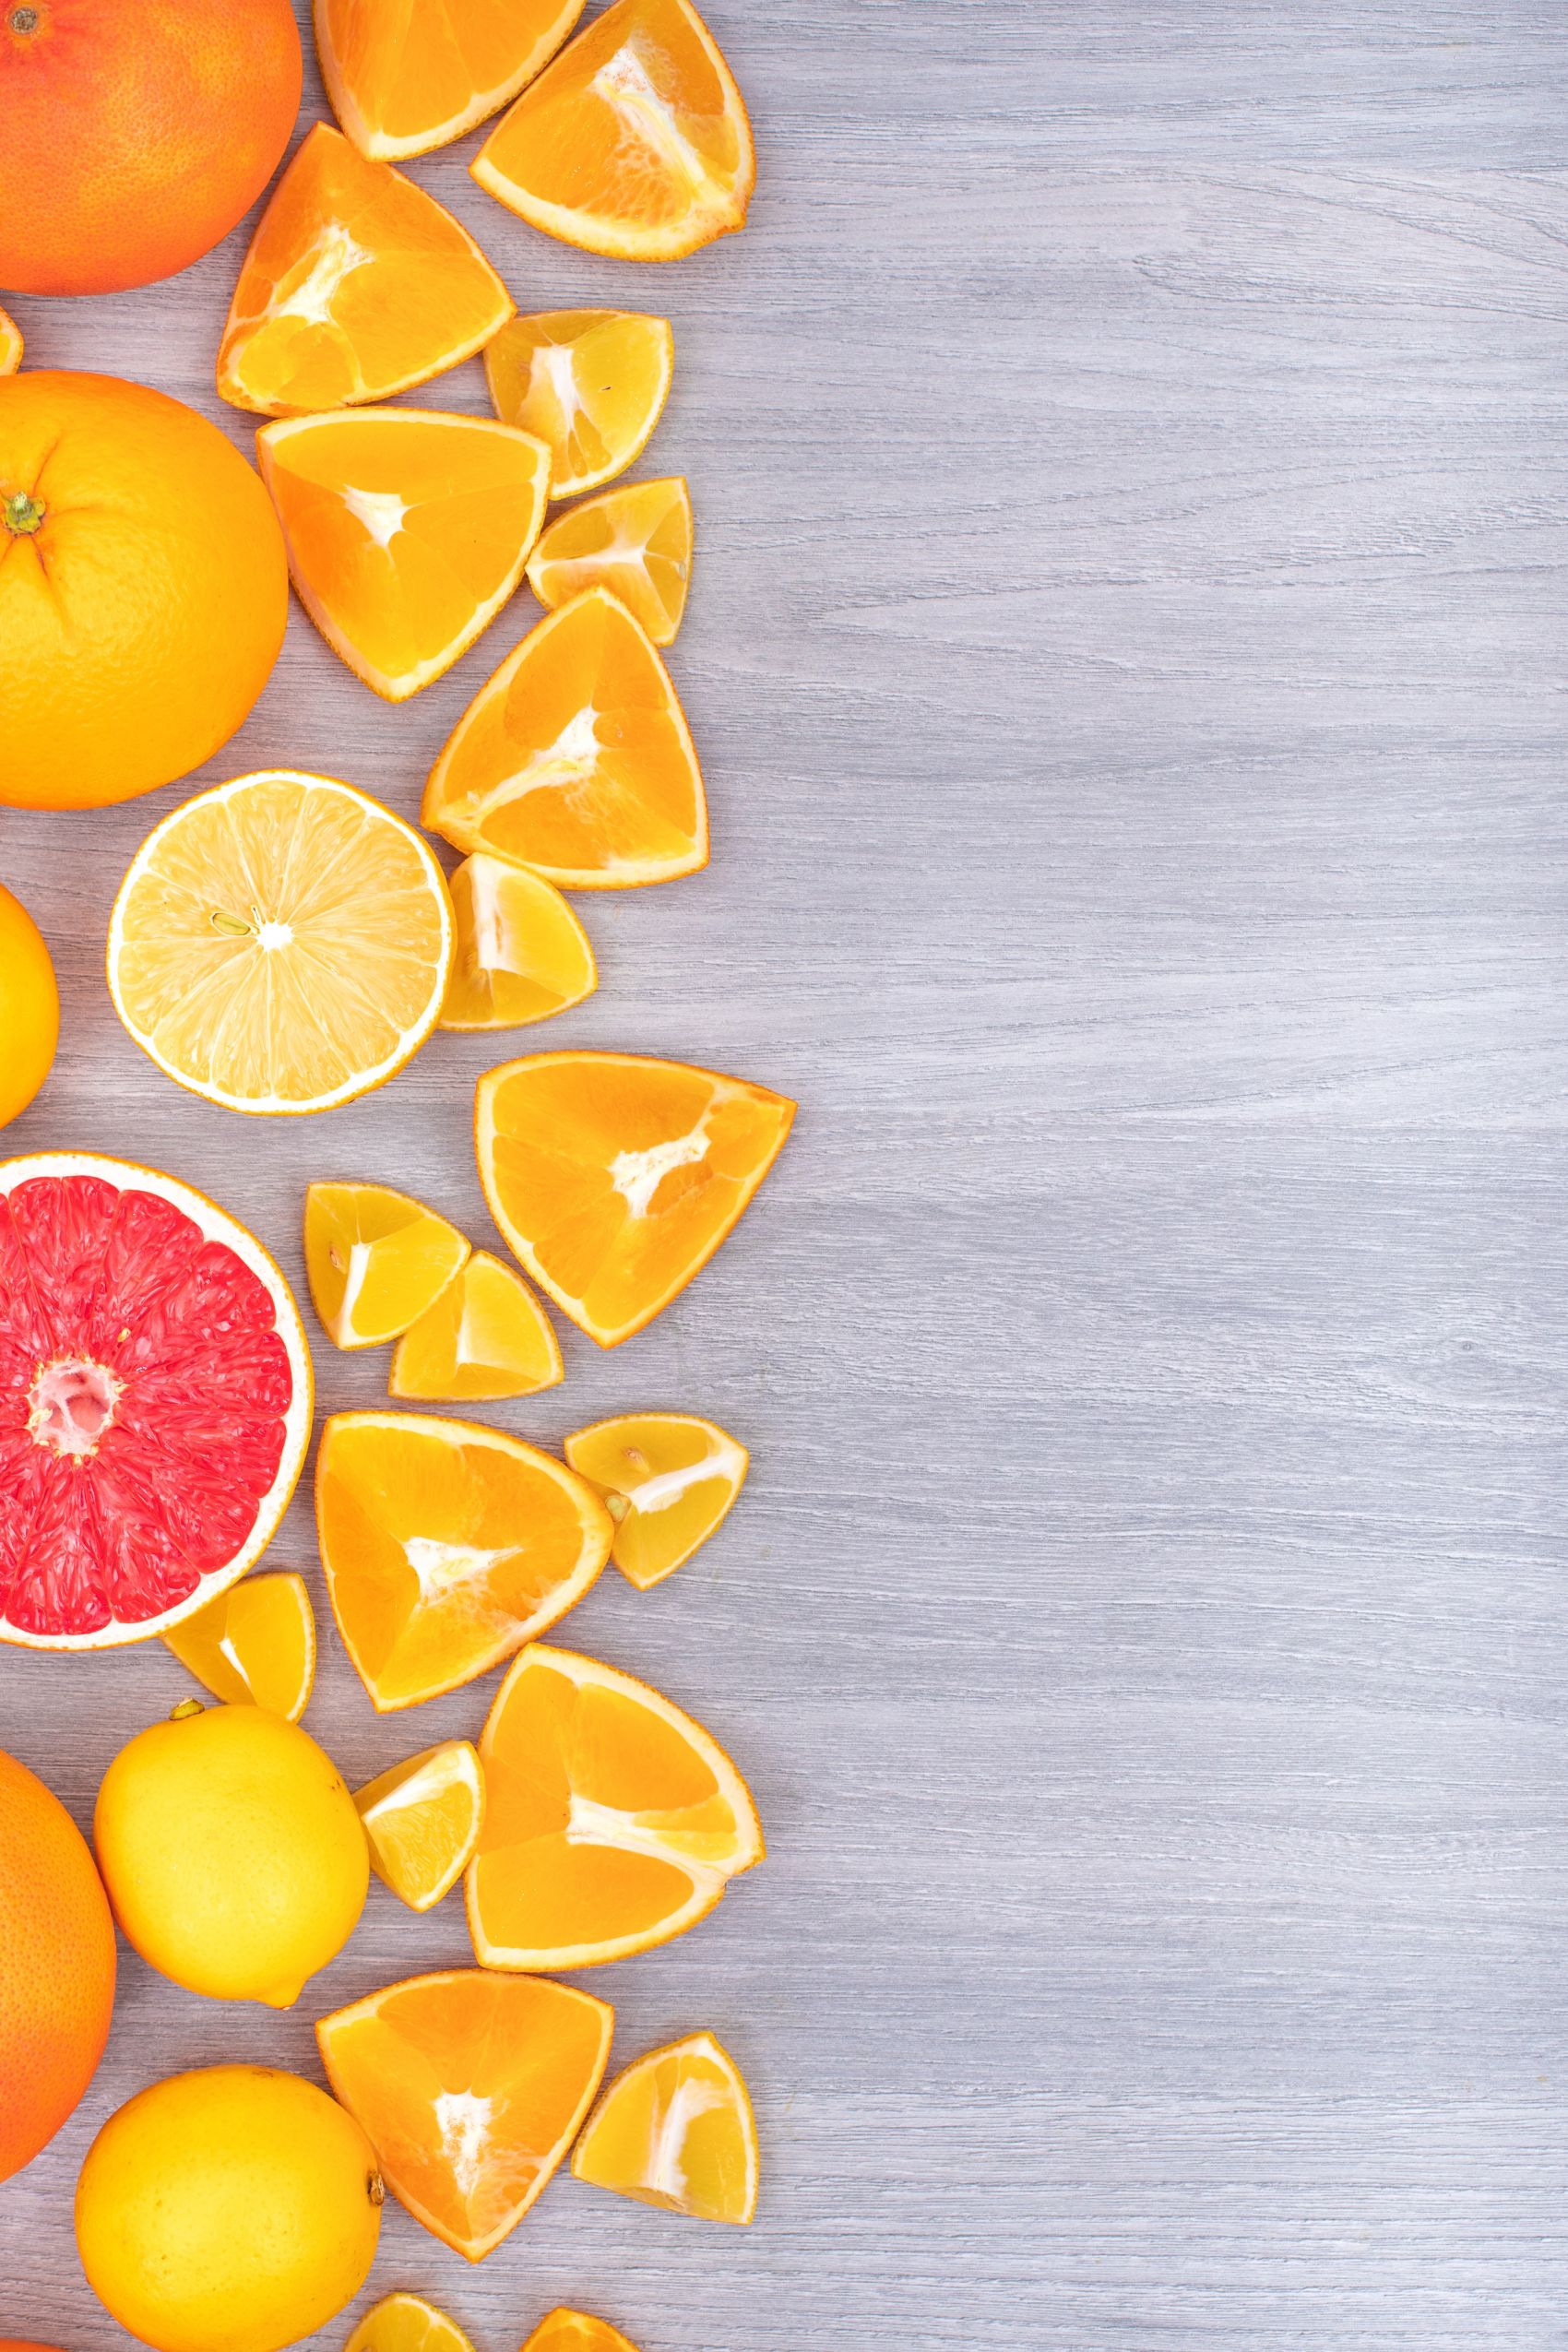 无规则排序的脐橙与水果片封面大图